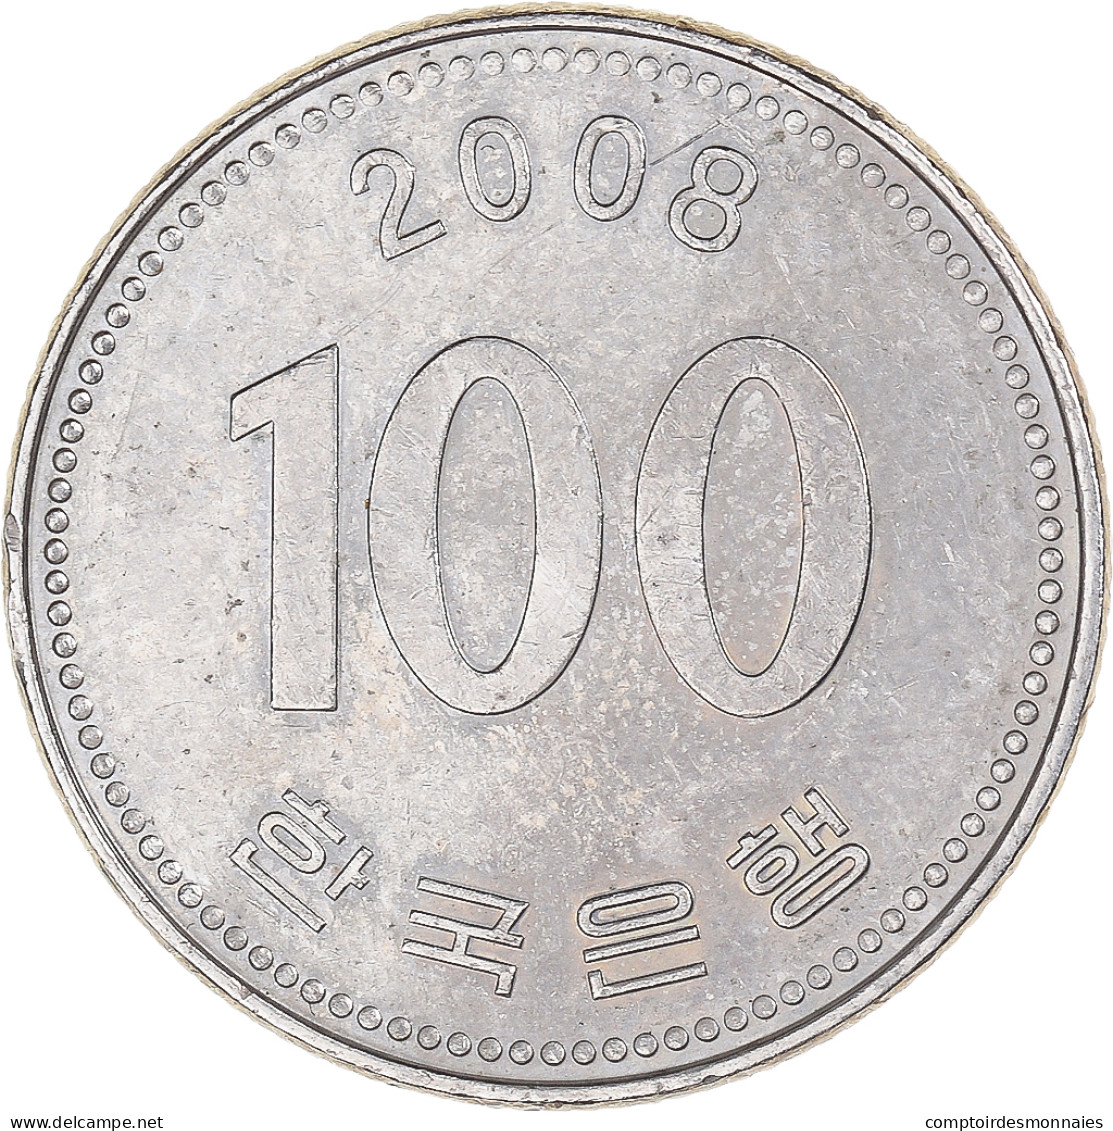 Monnaie, Corée, 100 Won, 2008 - Corée Du Sud